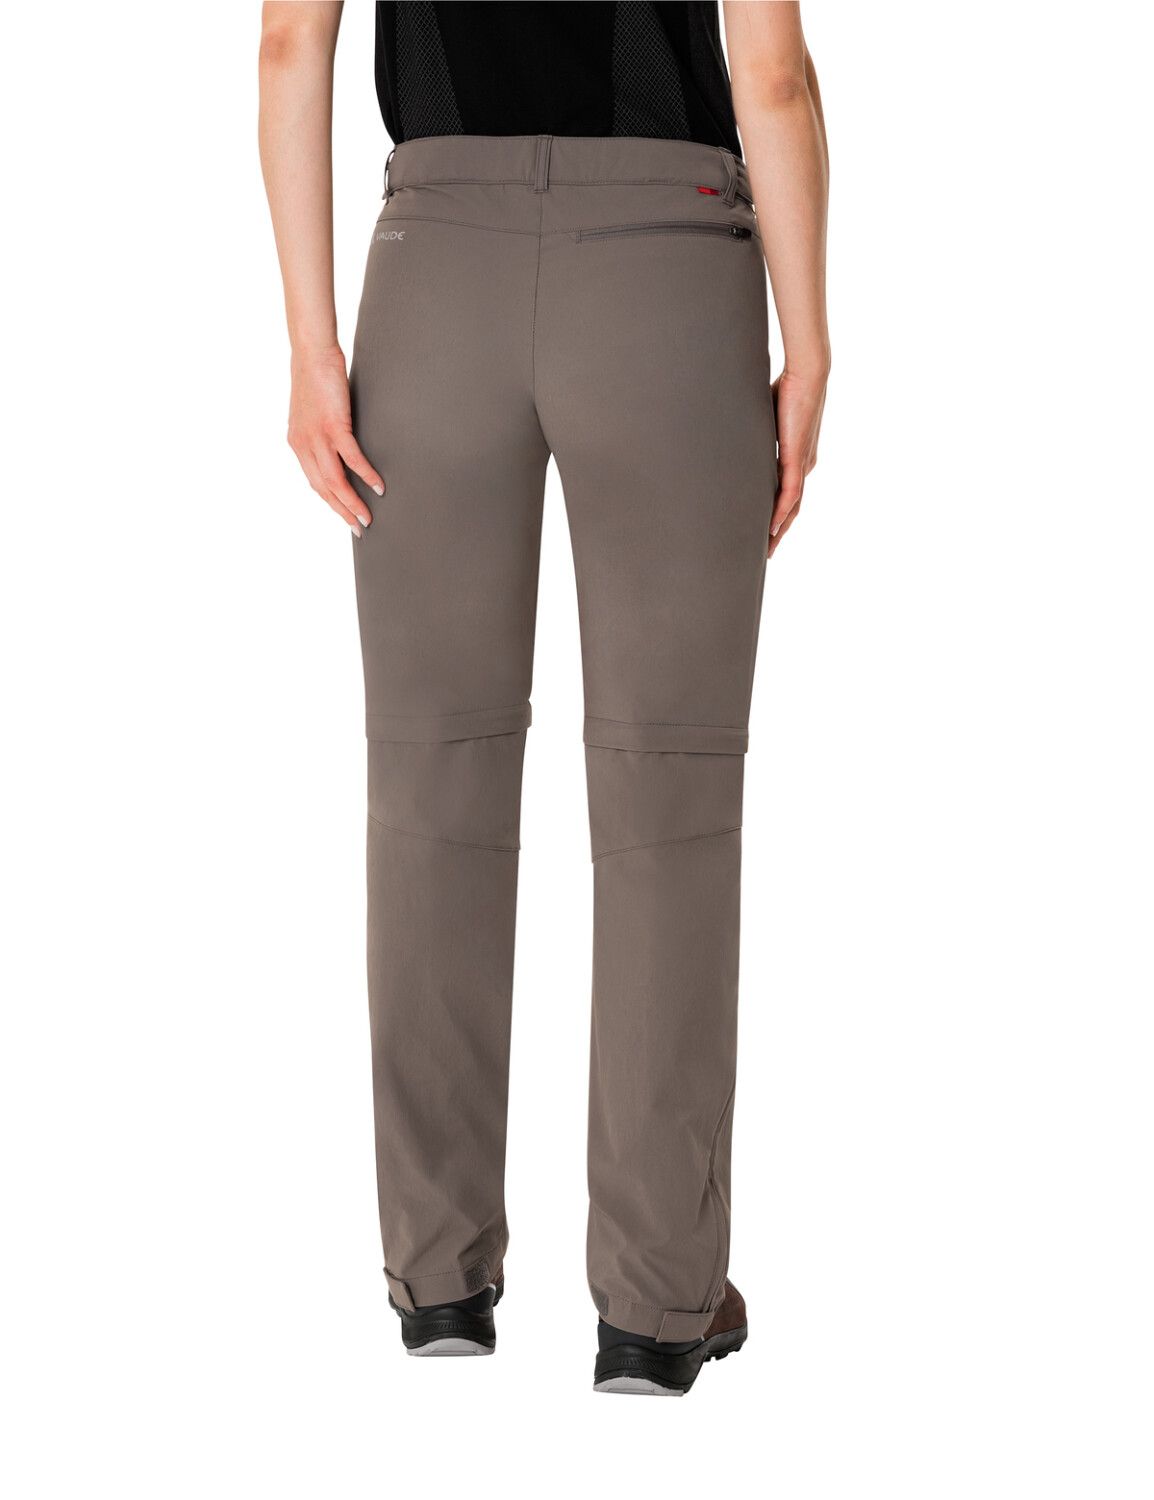 VAUDE Women's Farley Stretch ZO T-Zip Pants (Bild 29)